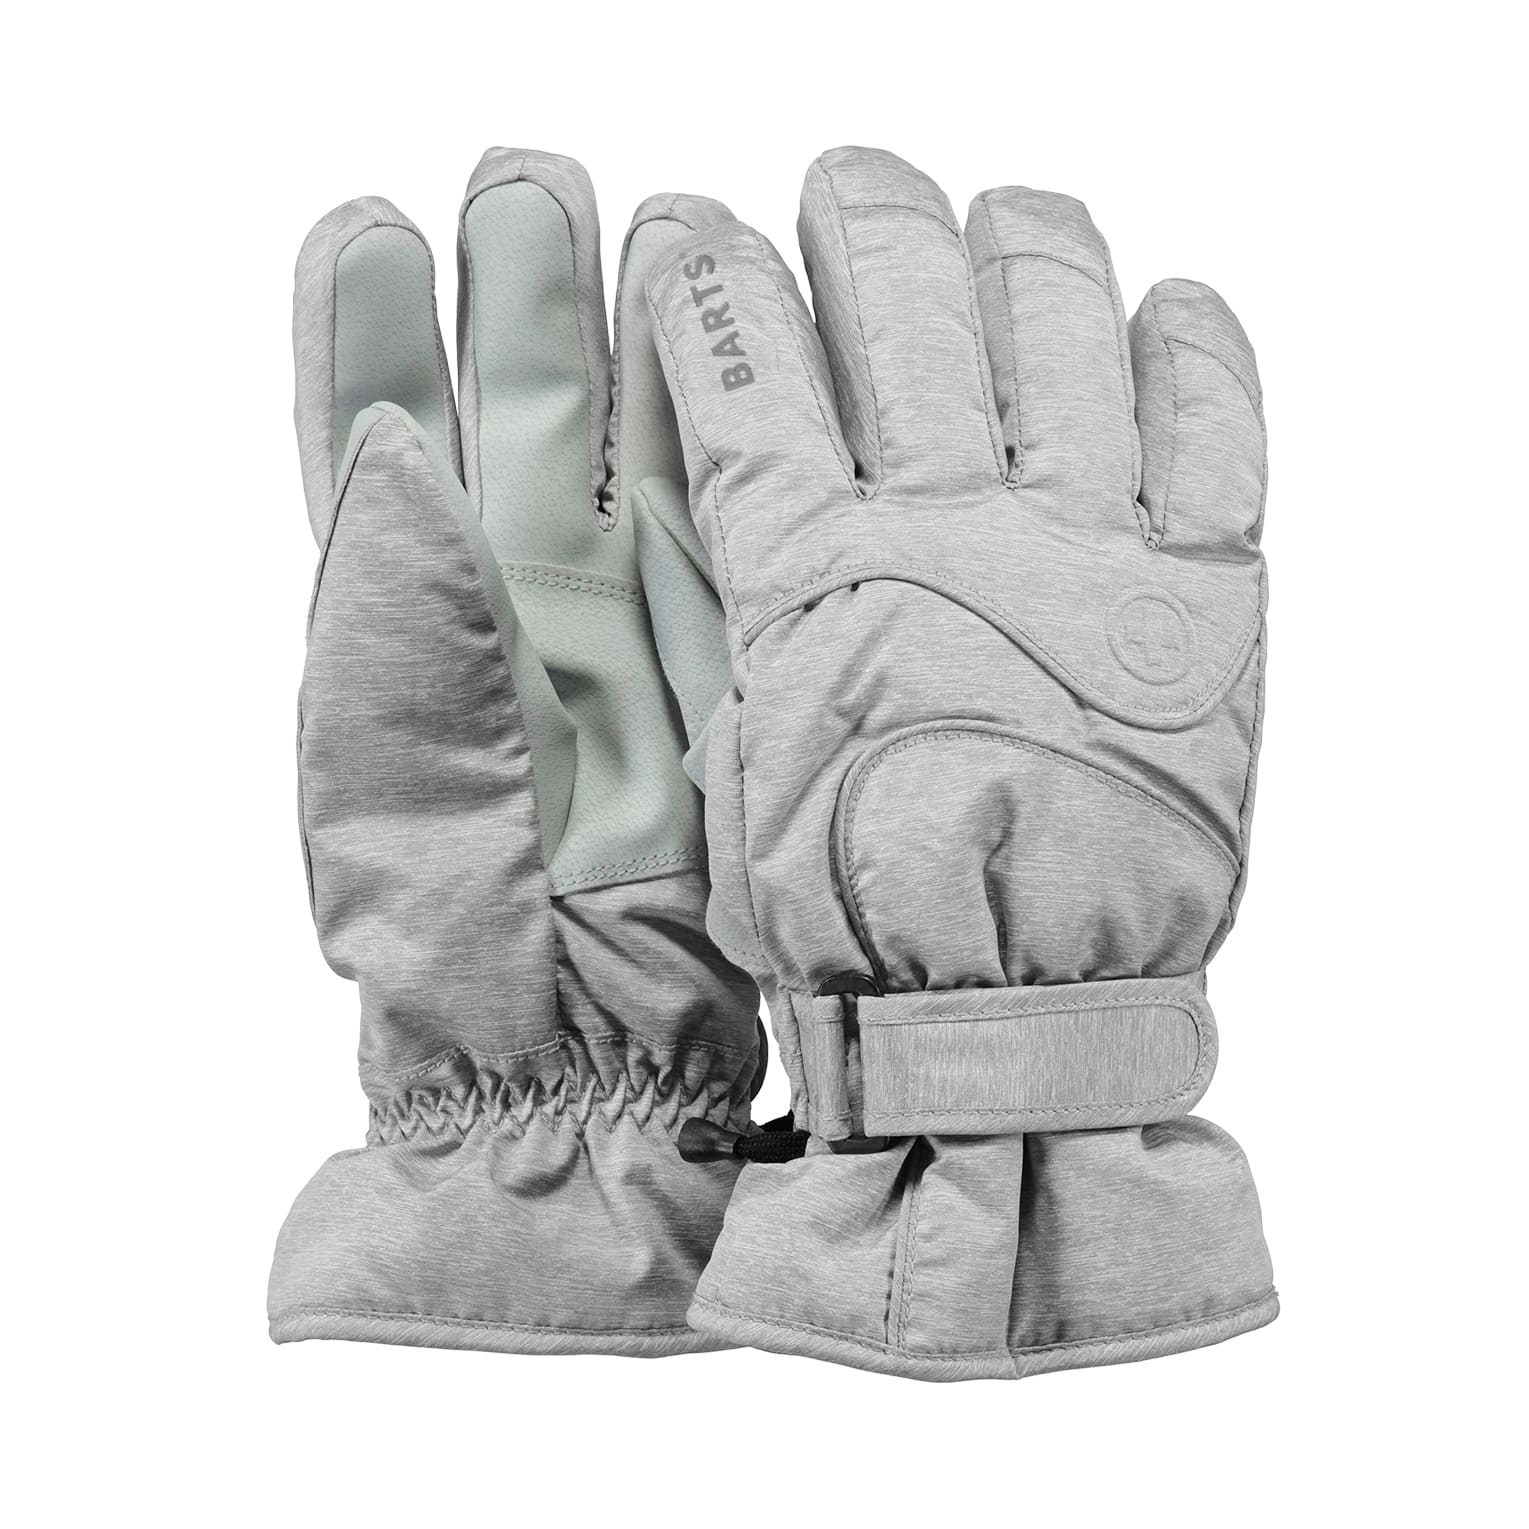 Noodlottig lepel kleuring Ski handschoenen online kopen bij Duijvestein Winterstore